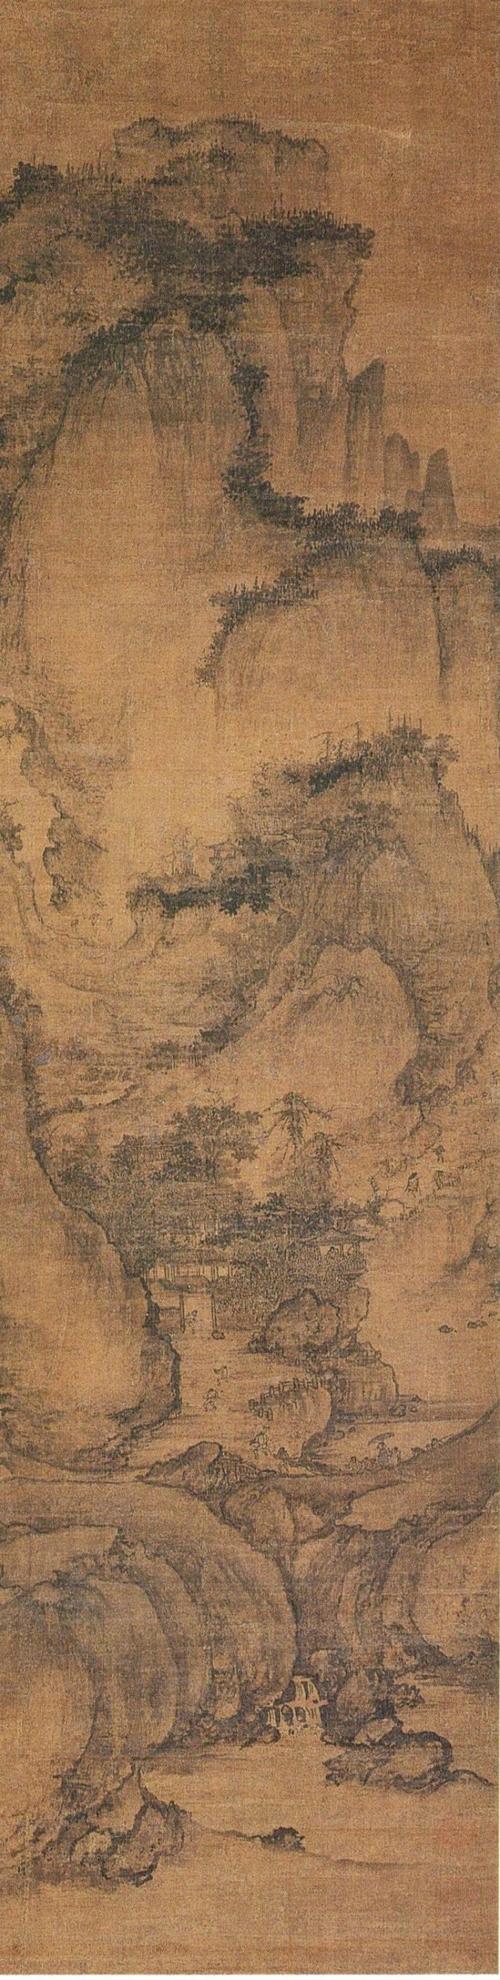 《山村图》是一幅布局深宏,描绘细腻的全景山水,是郭熙山水画的经典.